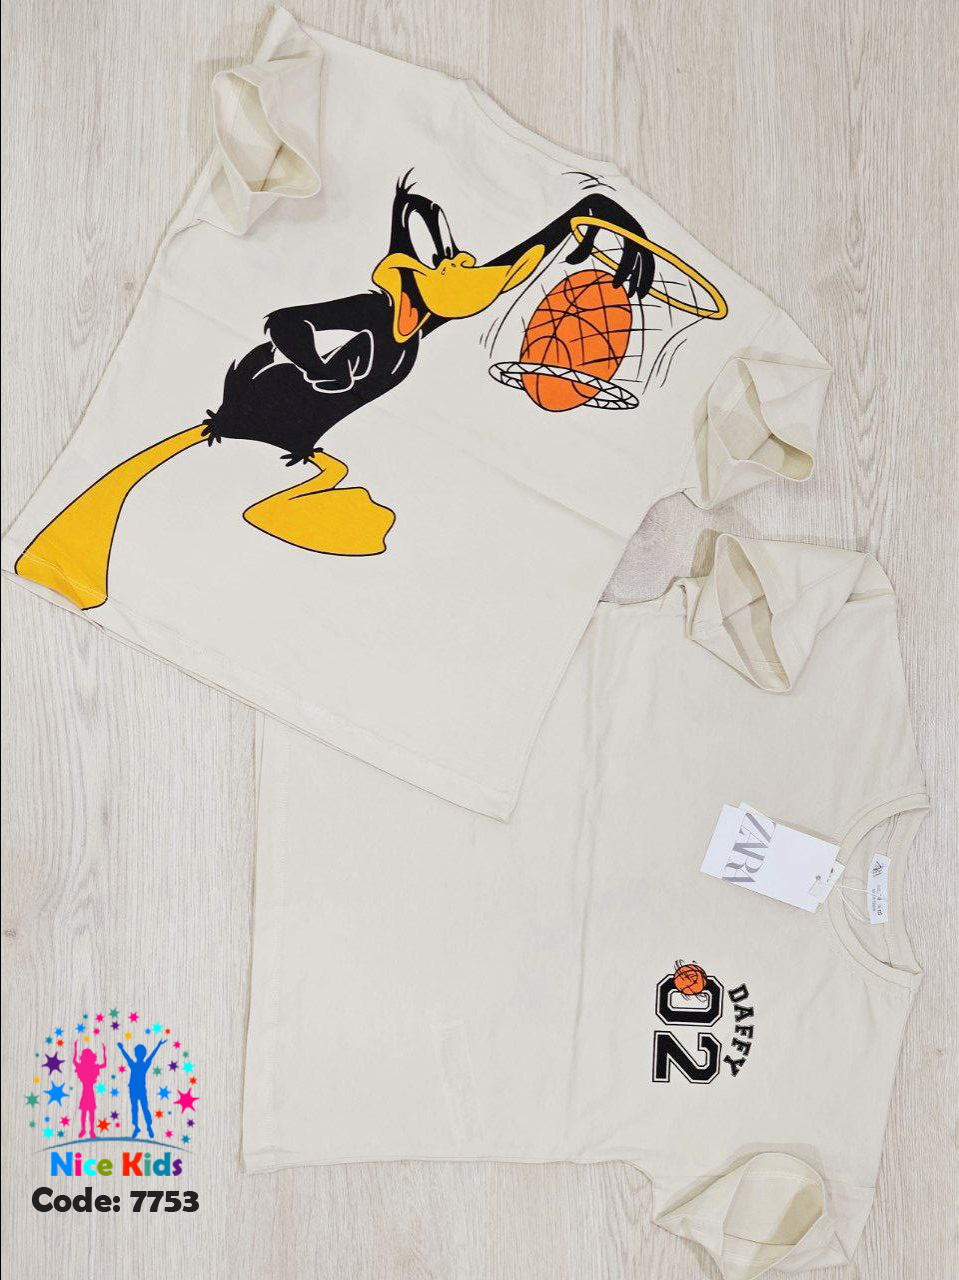 تصویر شماره 3 مربوط به تیشرت اردک دافی برند ZARA با کد 7753